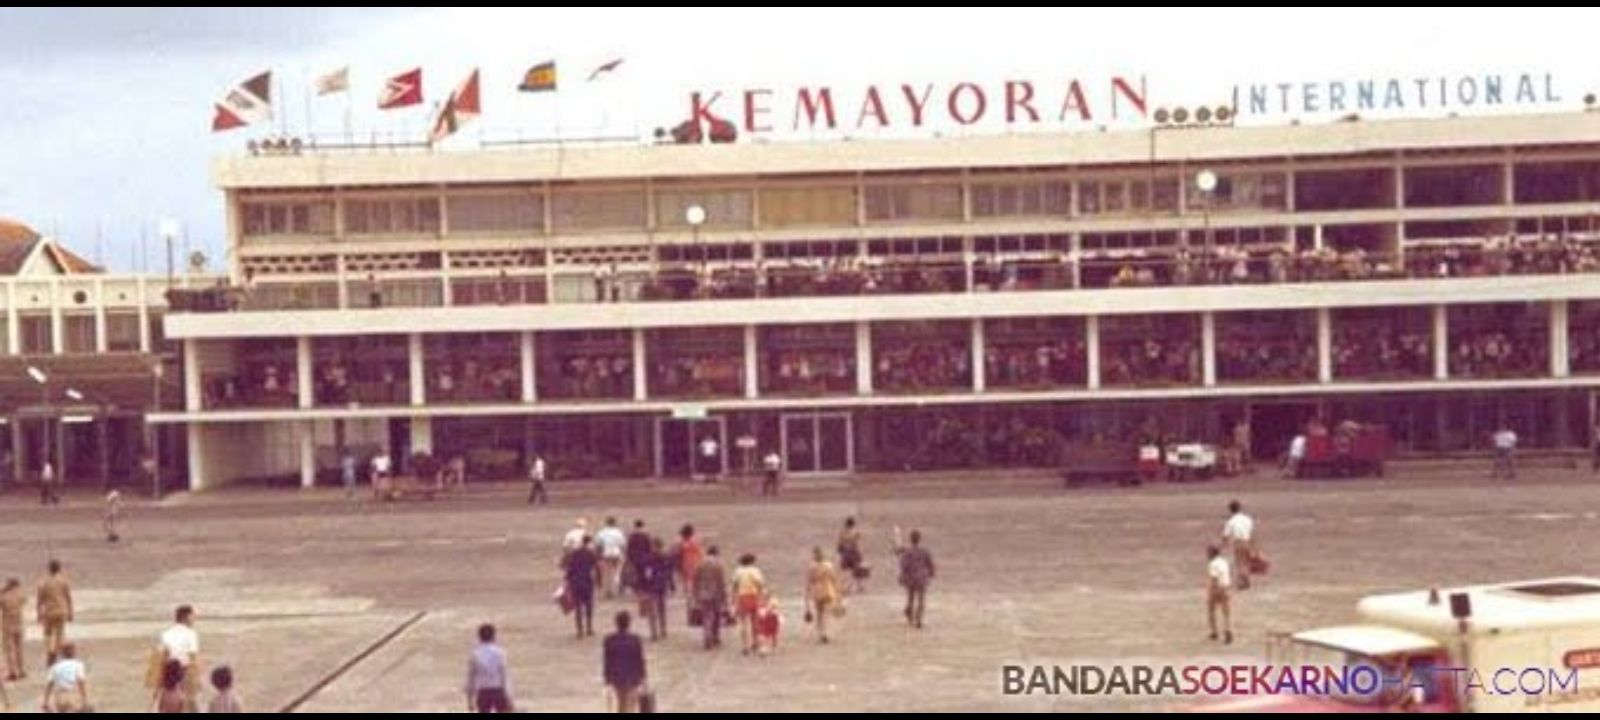 Bukan Soekarno-Hatta, Ternyata Ini Bandara Pertama di Indonesia